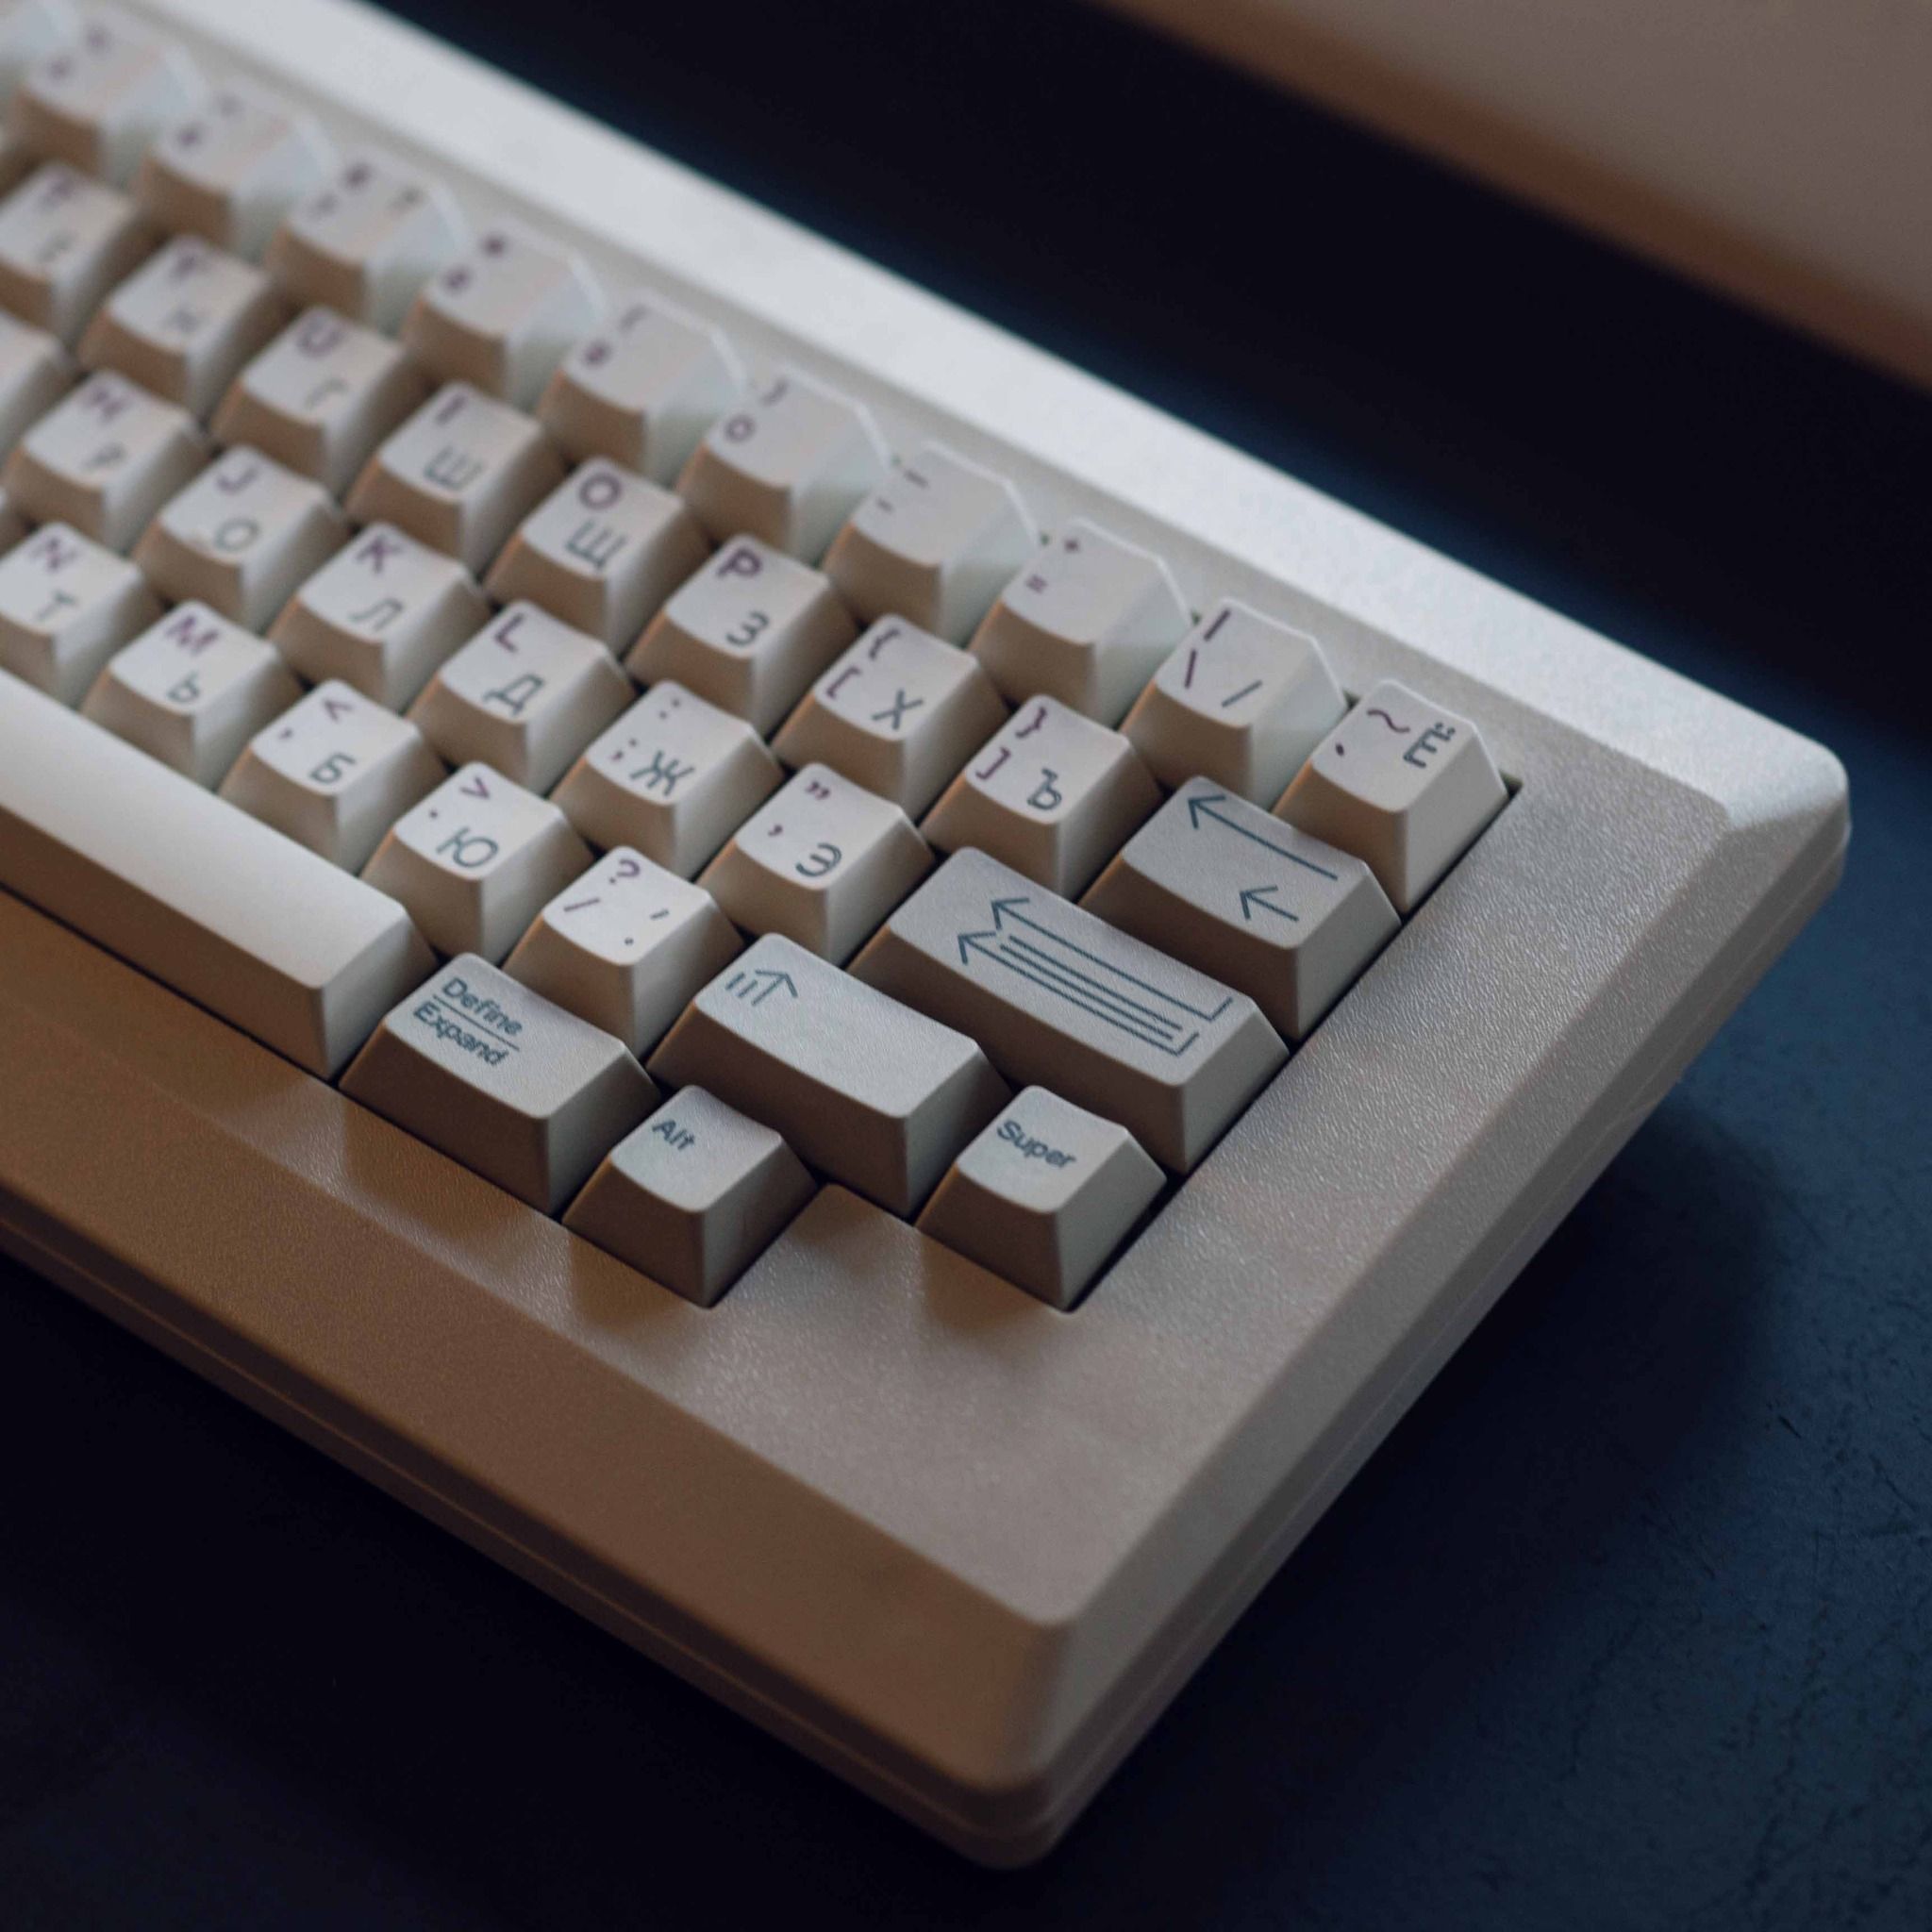  M0110 Keyboard Kit 